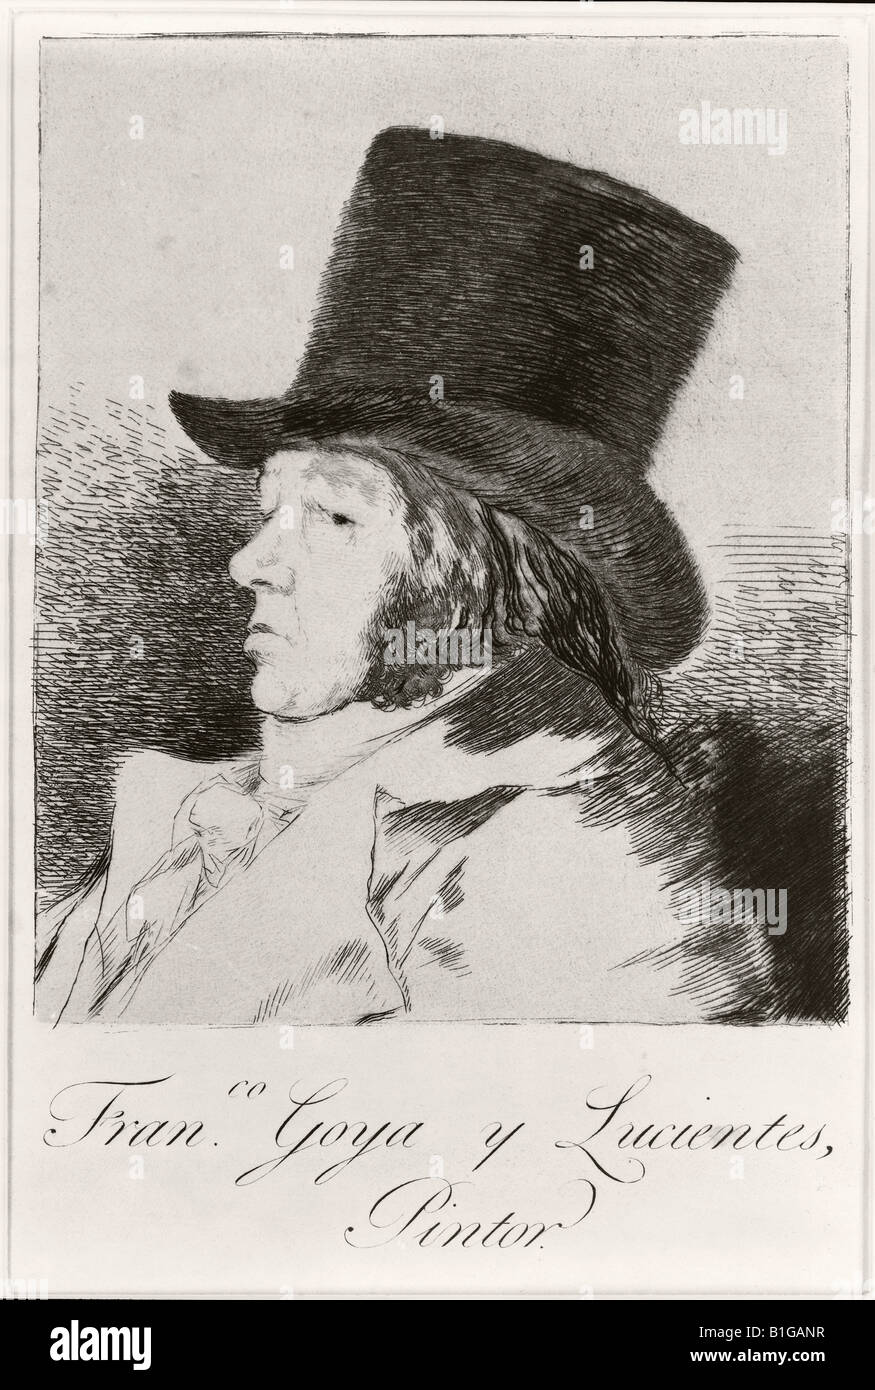 Francisco José de Goya y Lucientes, 1746 - 1828. Spanish painter and printmaker. Self portrait. Stock Photo